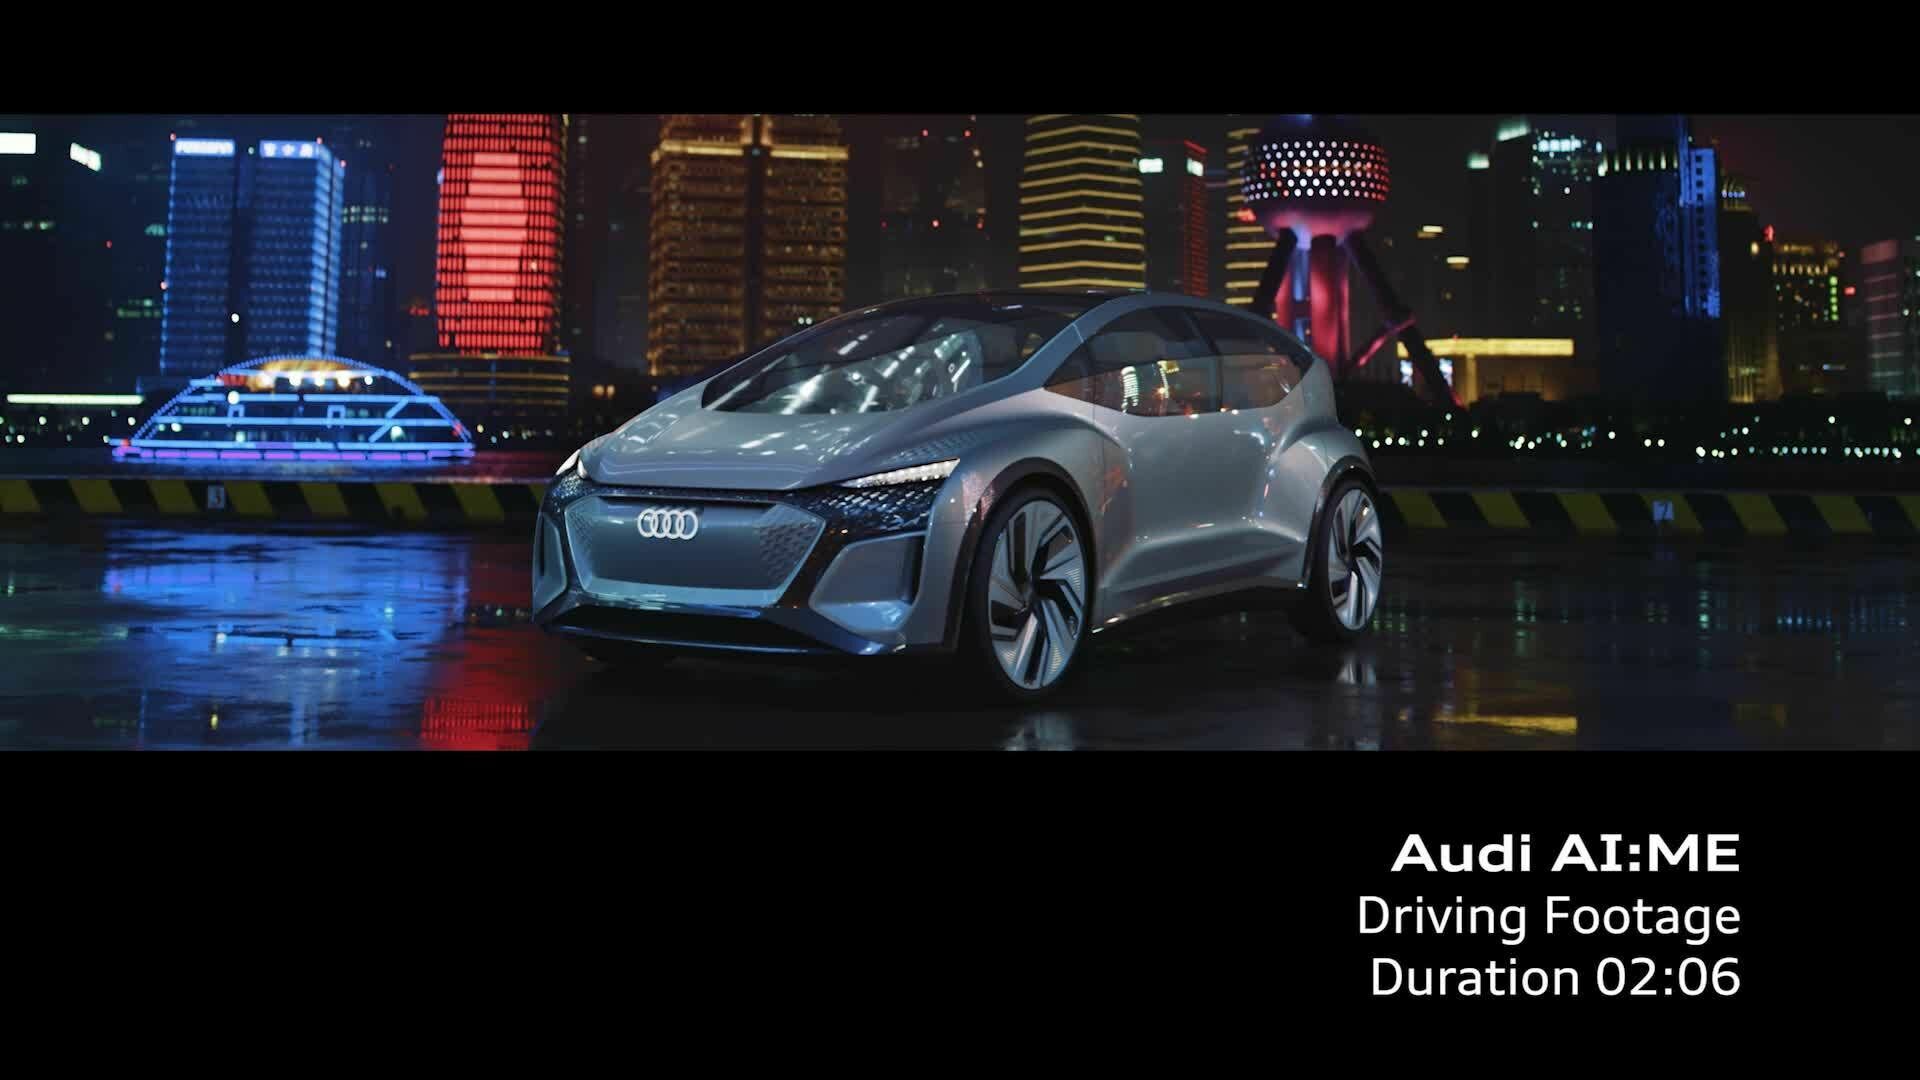 Das Showcar Audi AI:ME (Driving Footage)